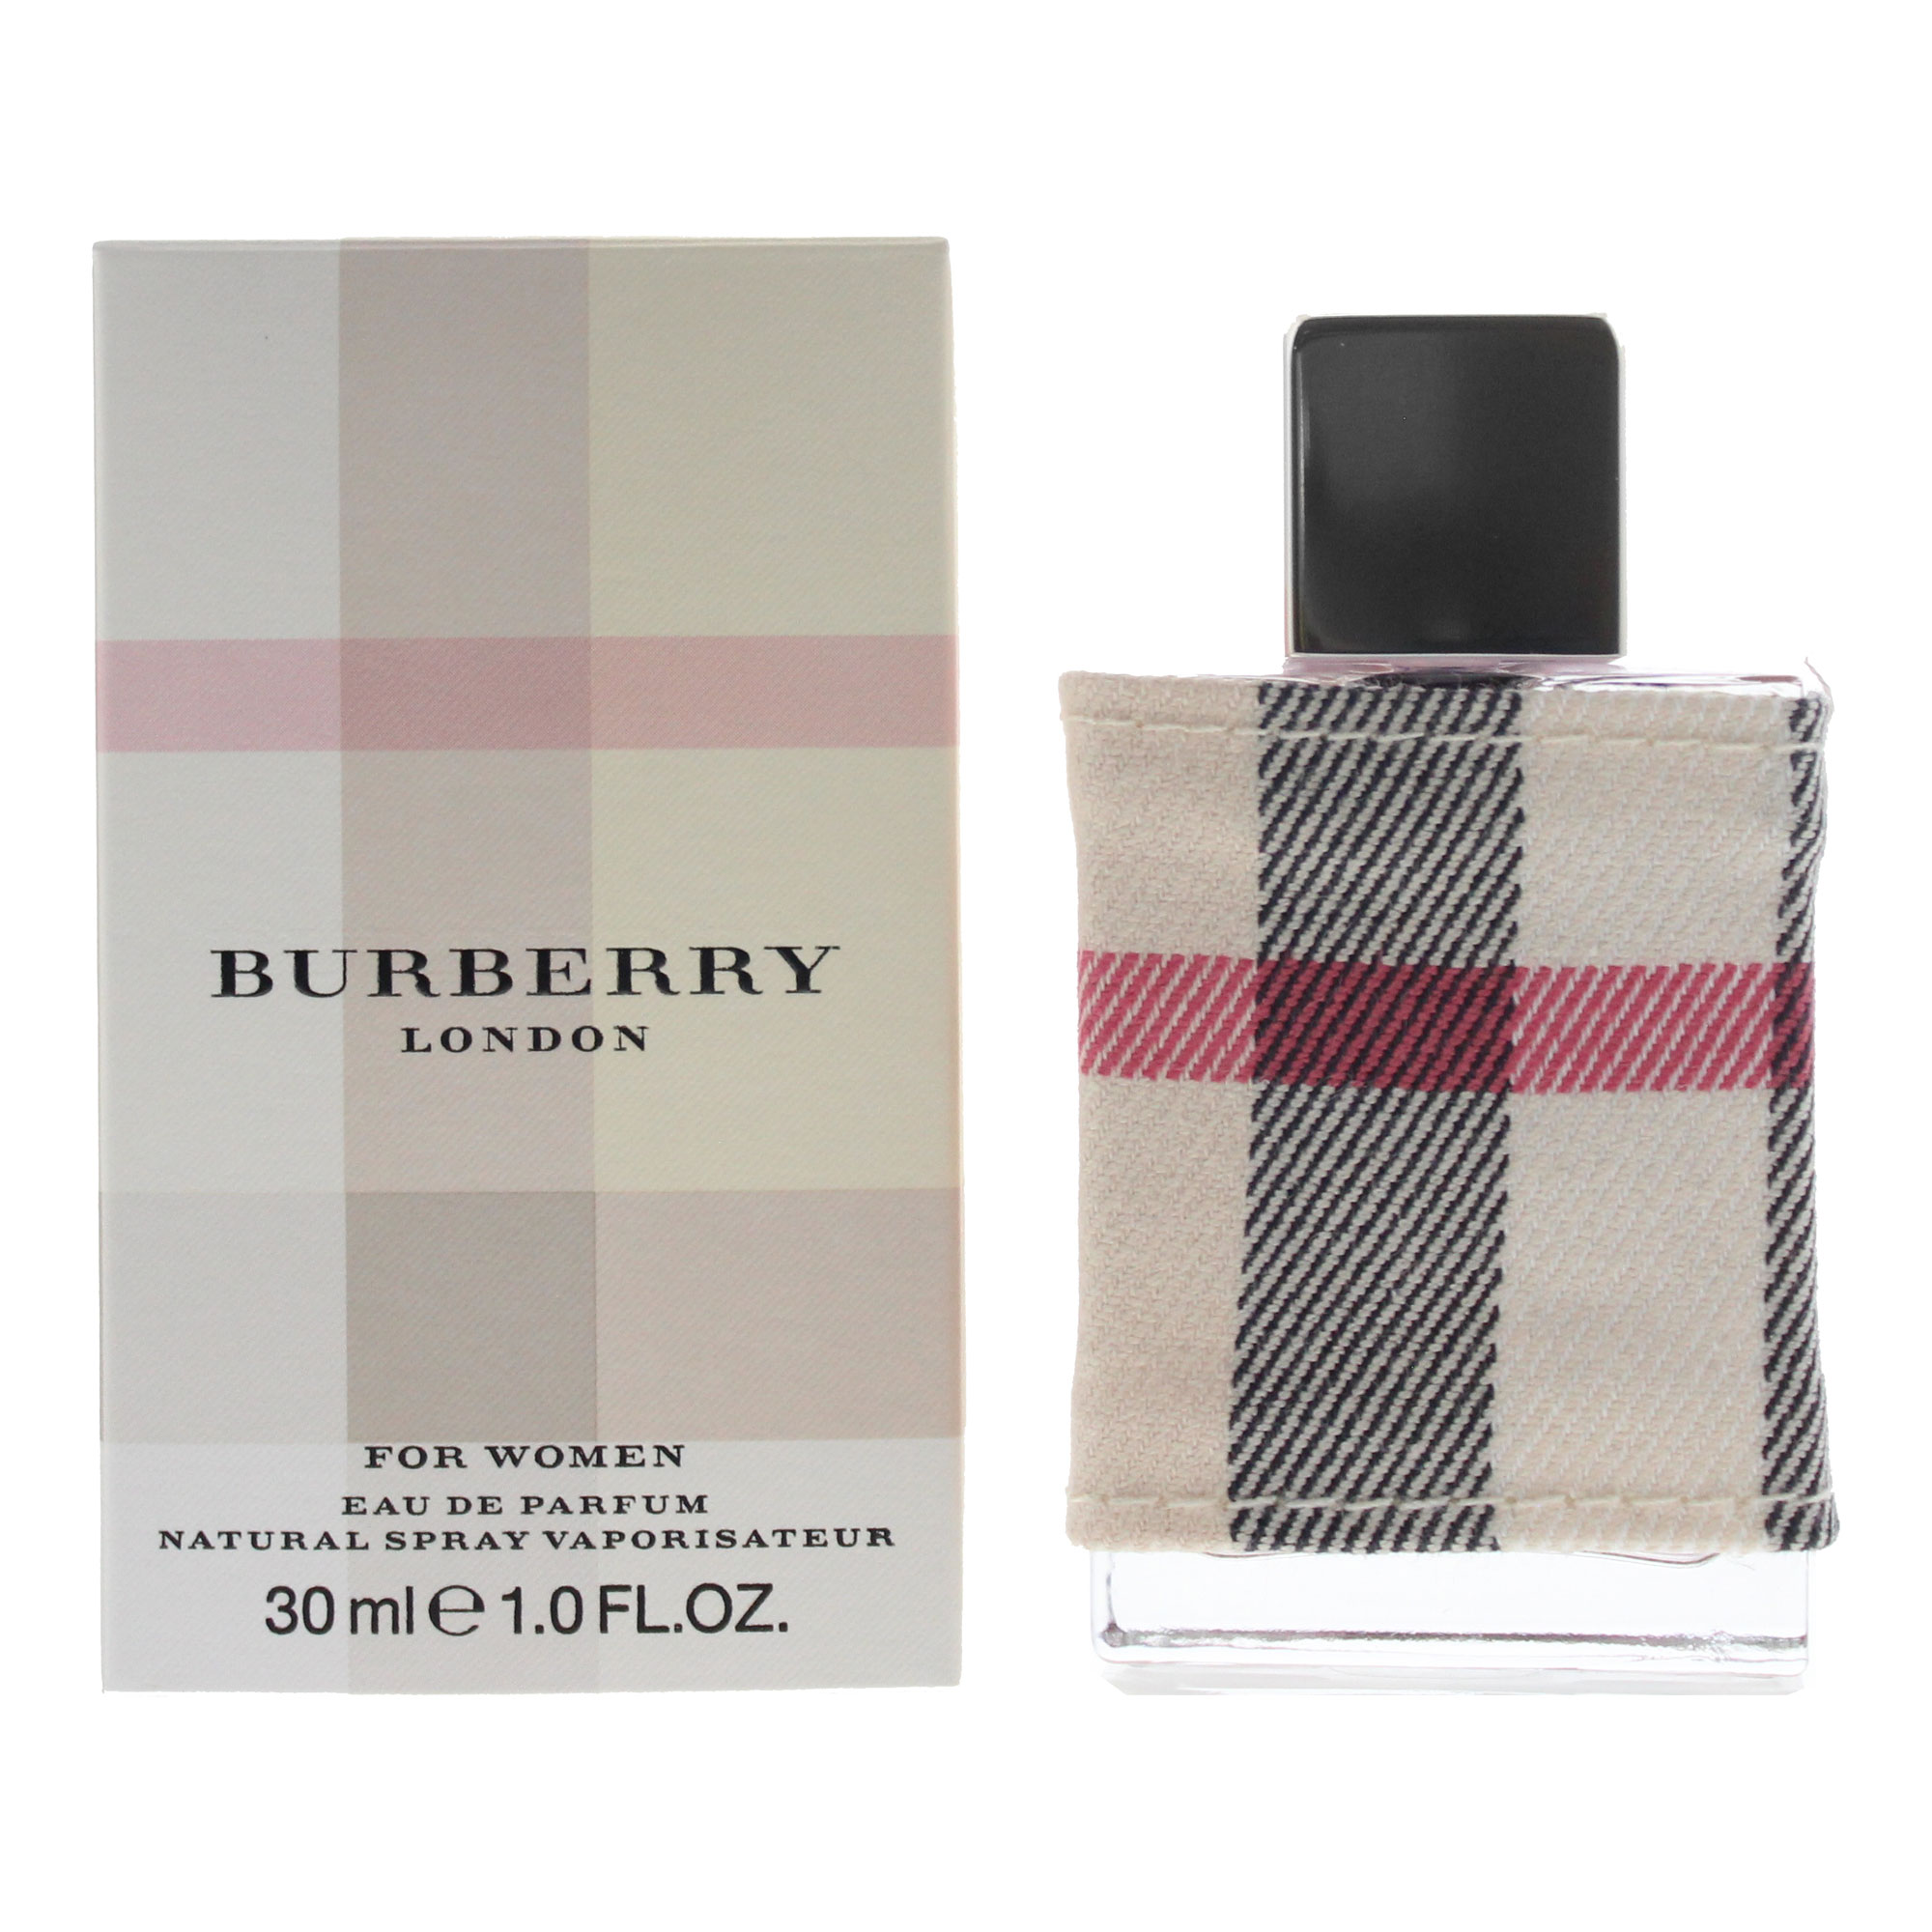 Buy Burberry London Eau de Parfum 30ml for GBP 24.99 | Card Factory UK